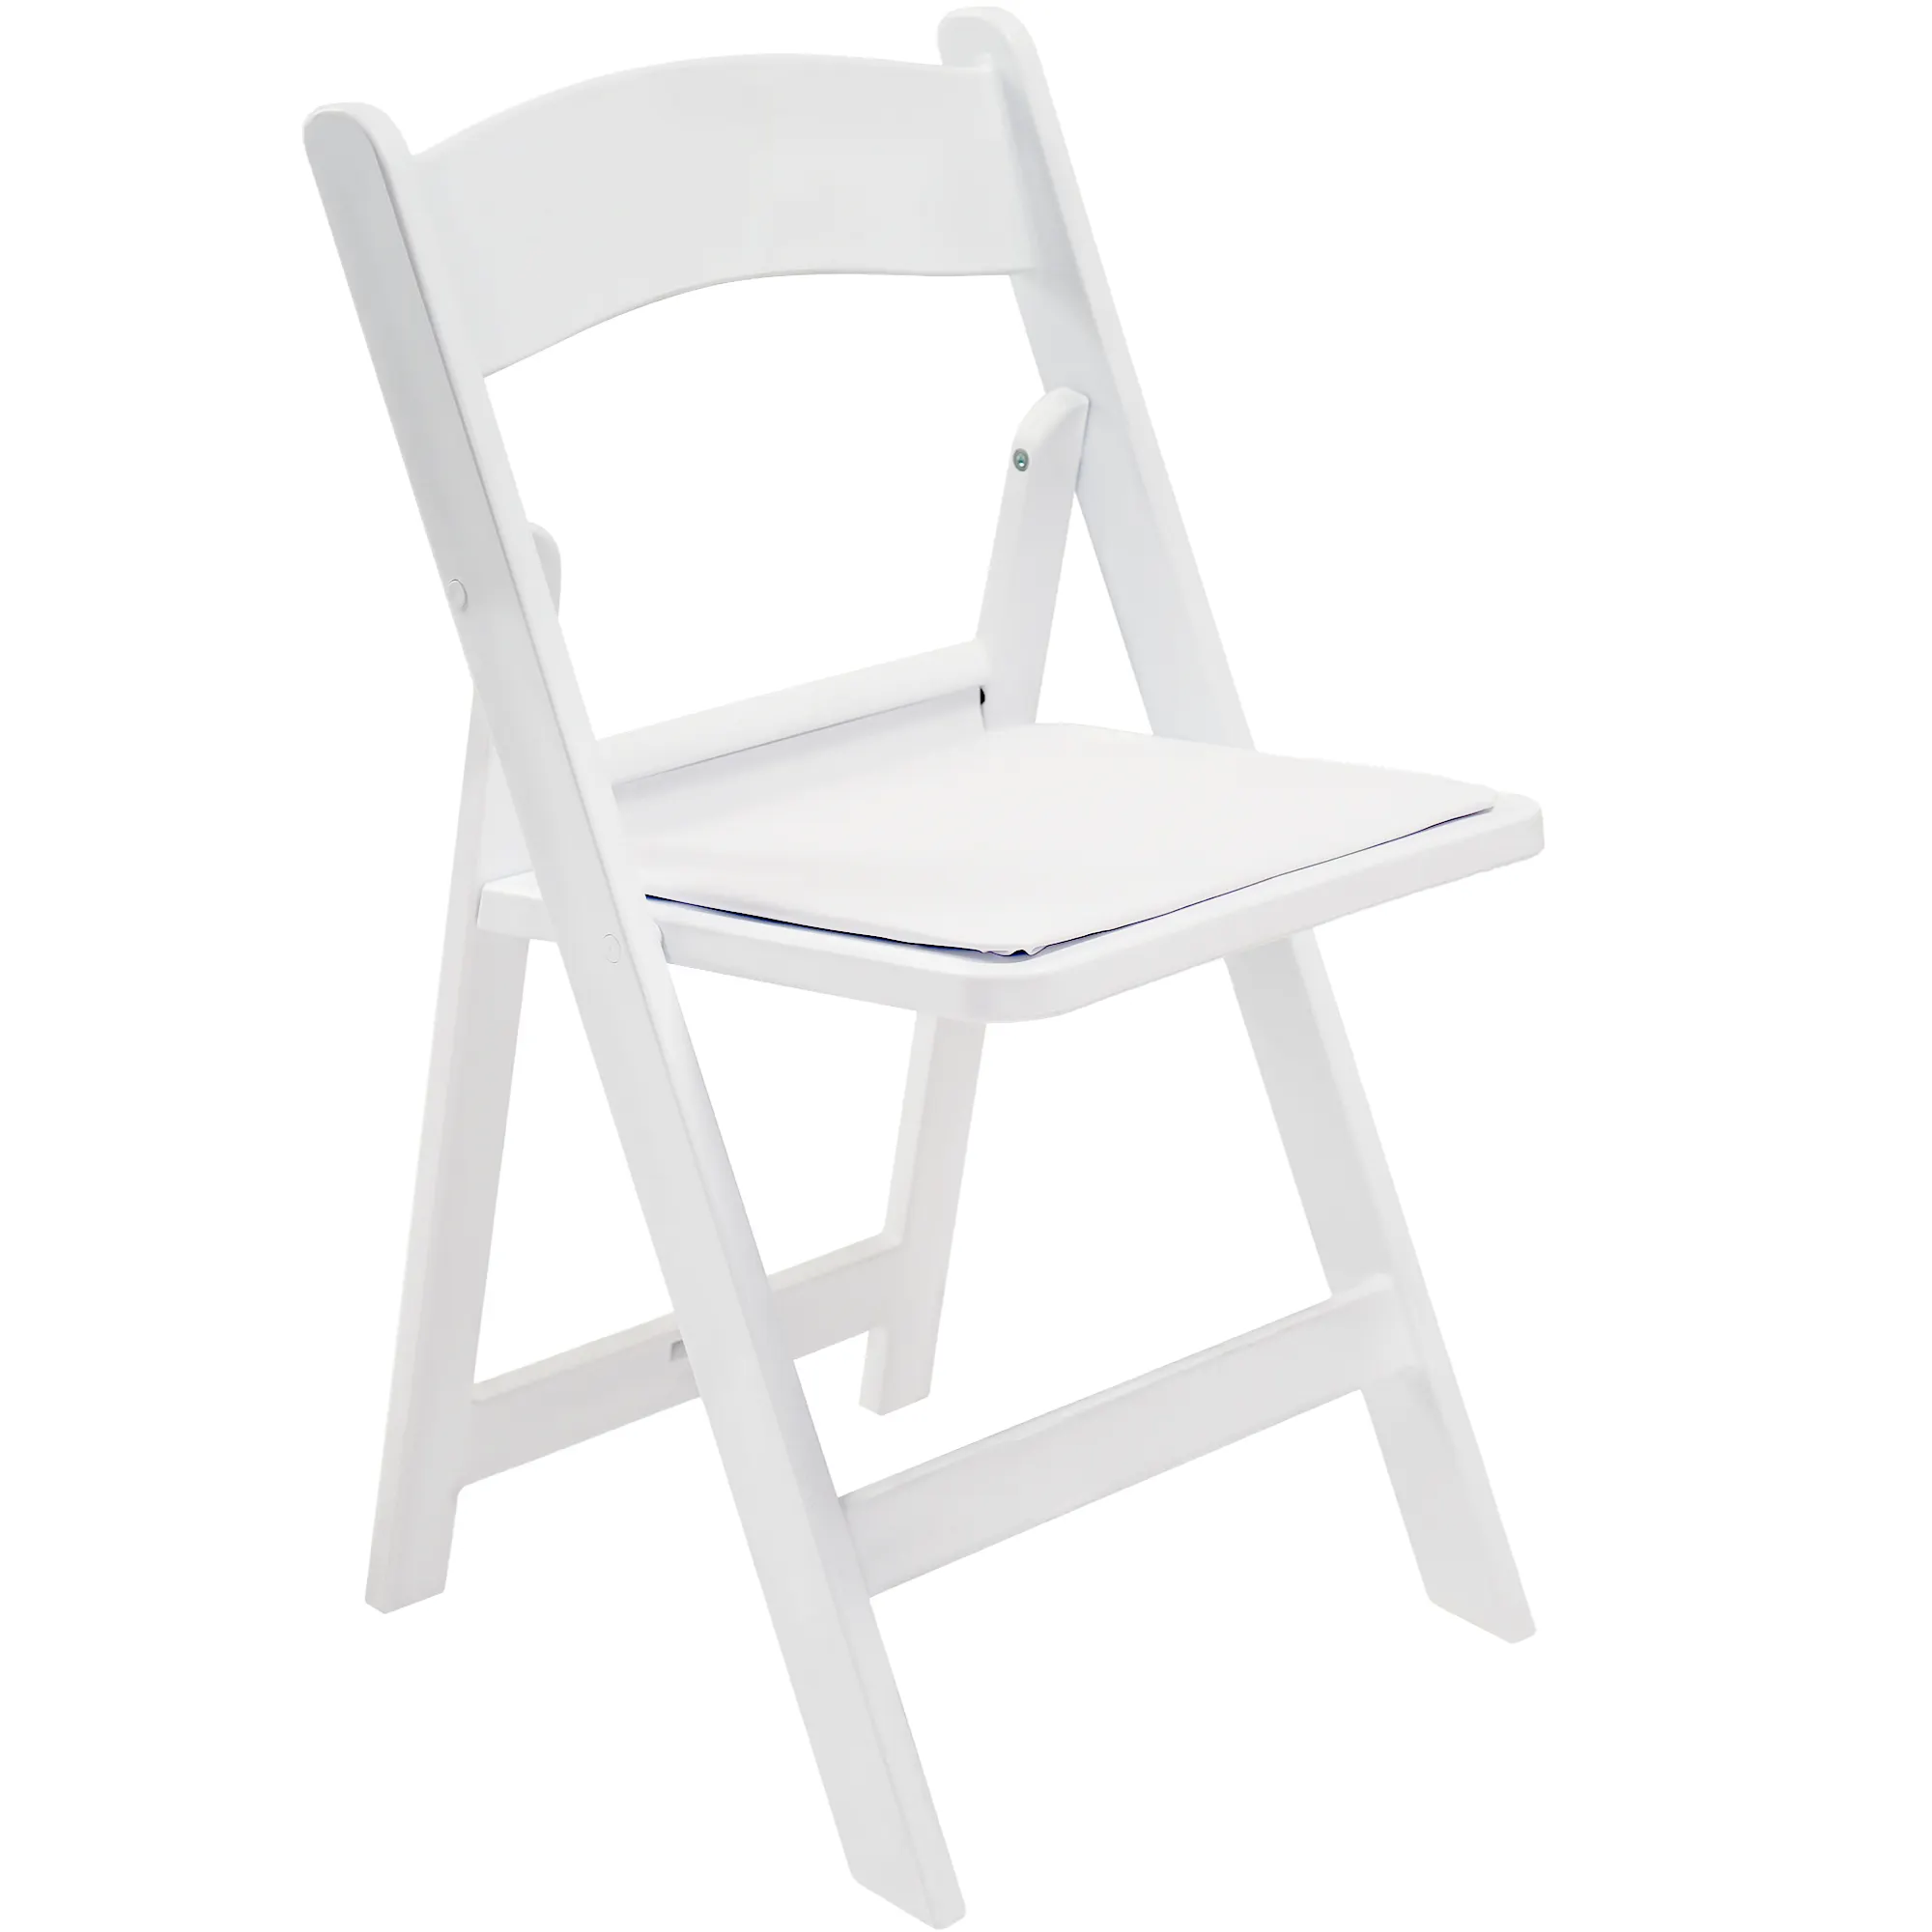 Assento acolchoado Vingli de alta qualidade para banquetes de casamento ao ar livre, cadeiras de jantar dobráveis de resina plástica branca